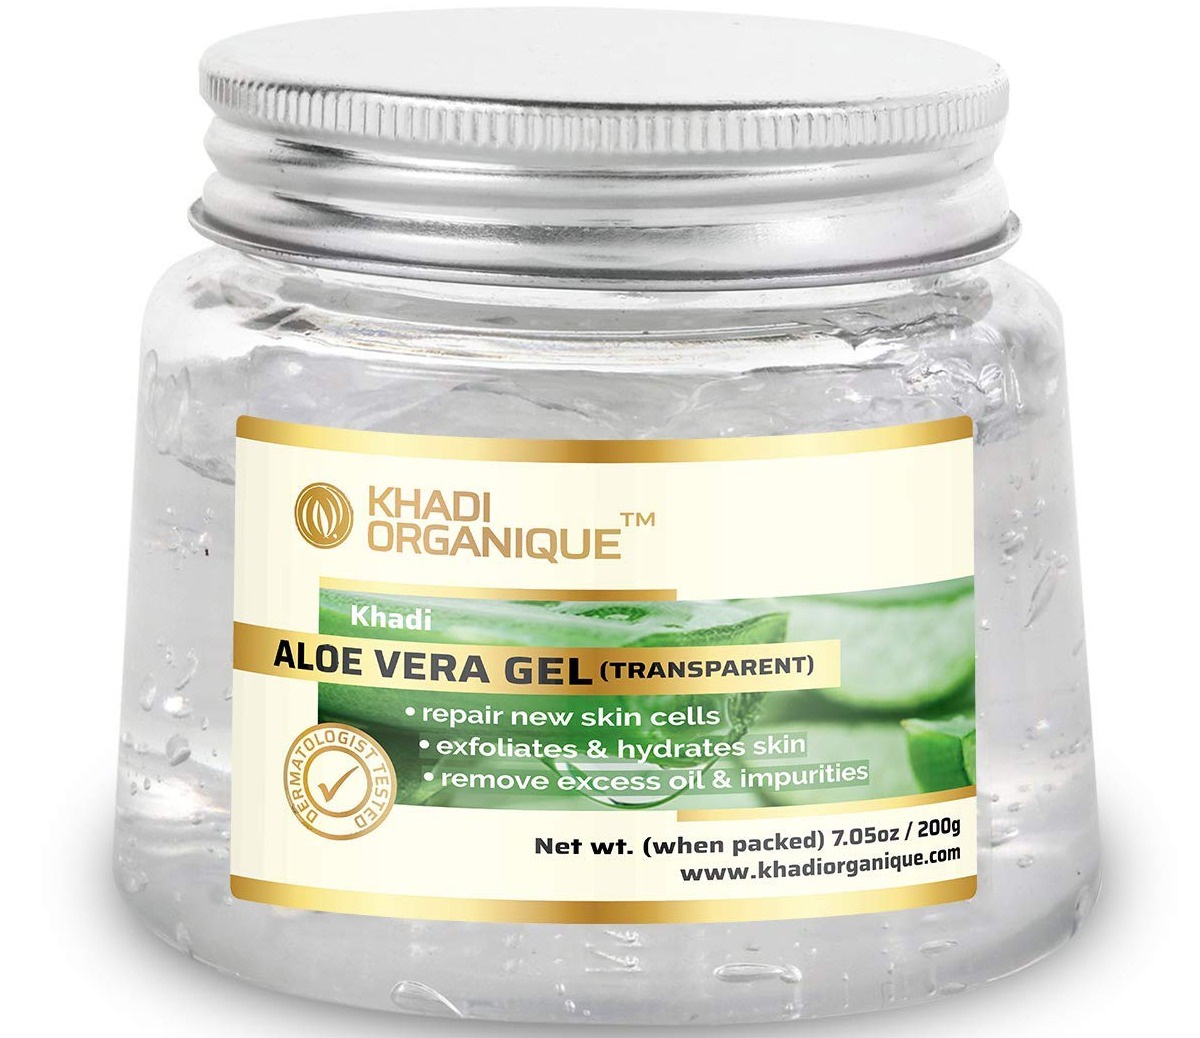 Khadi Organique Aloe Vera Gel (Transparent)